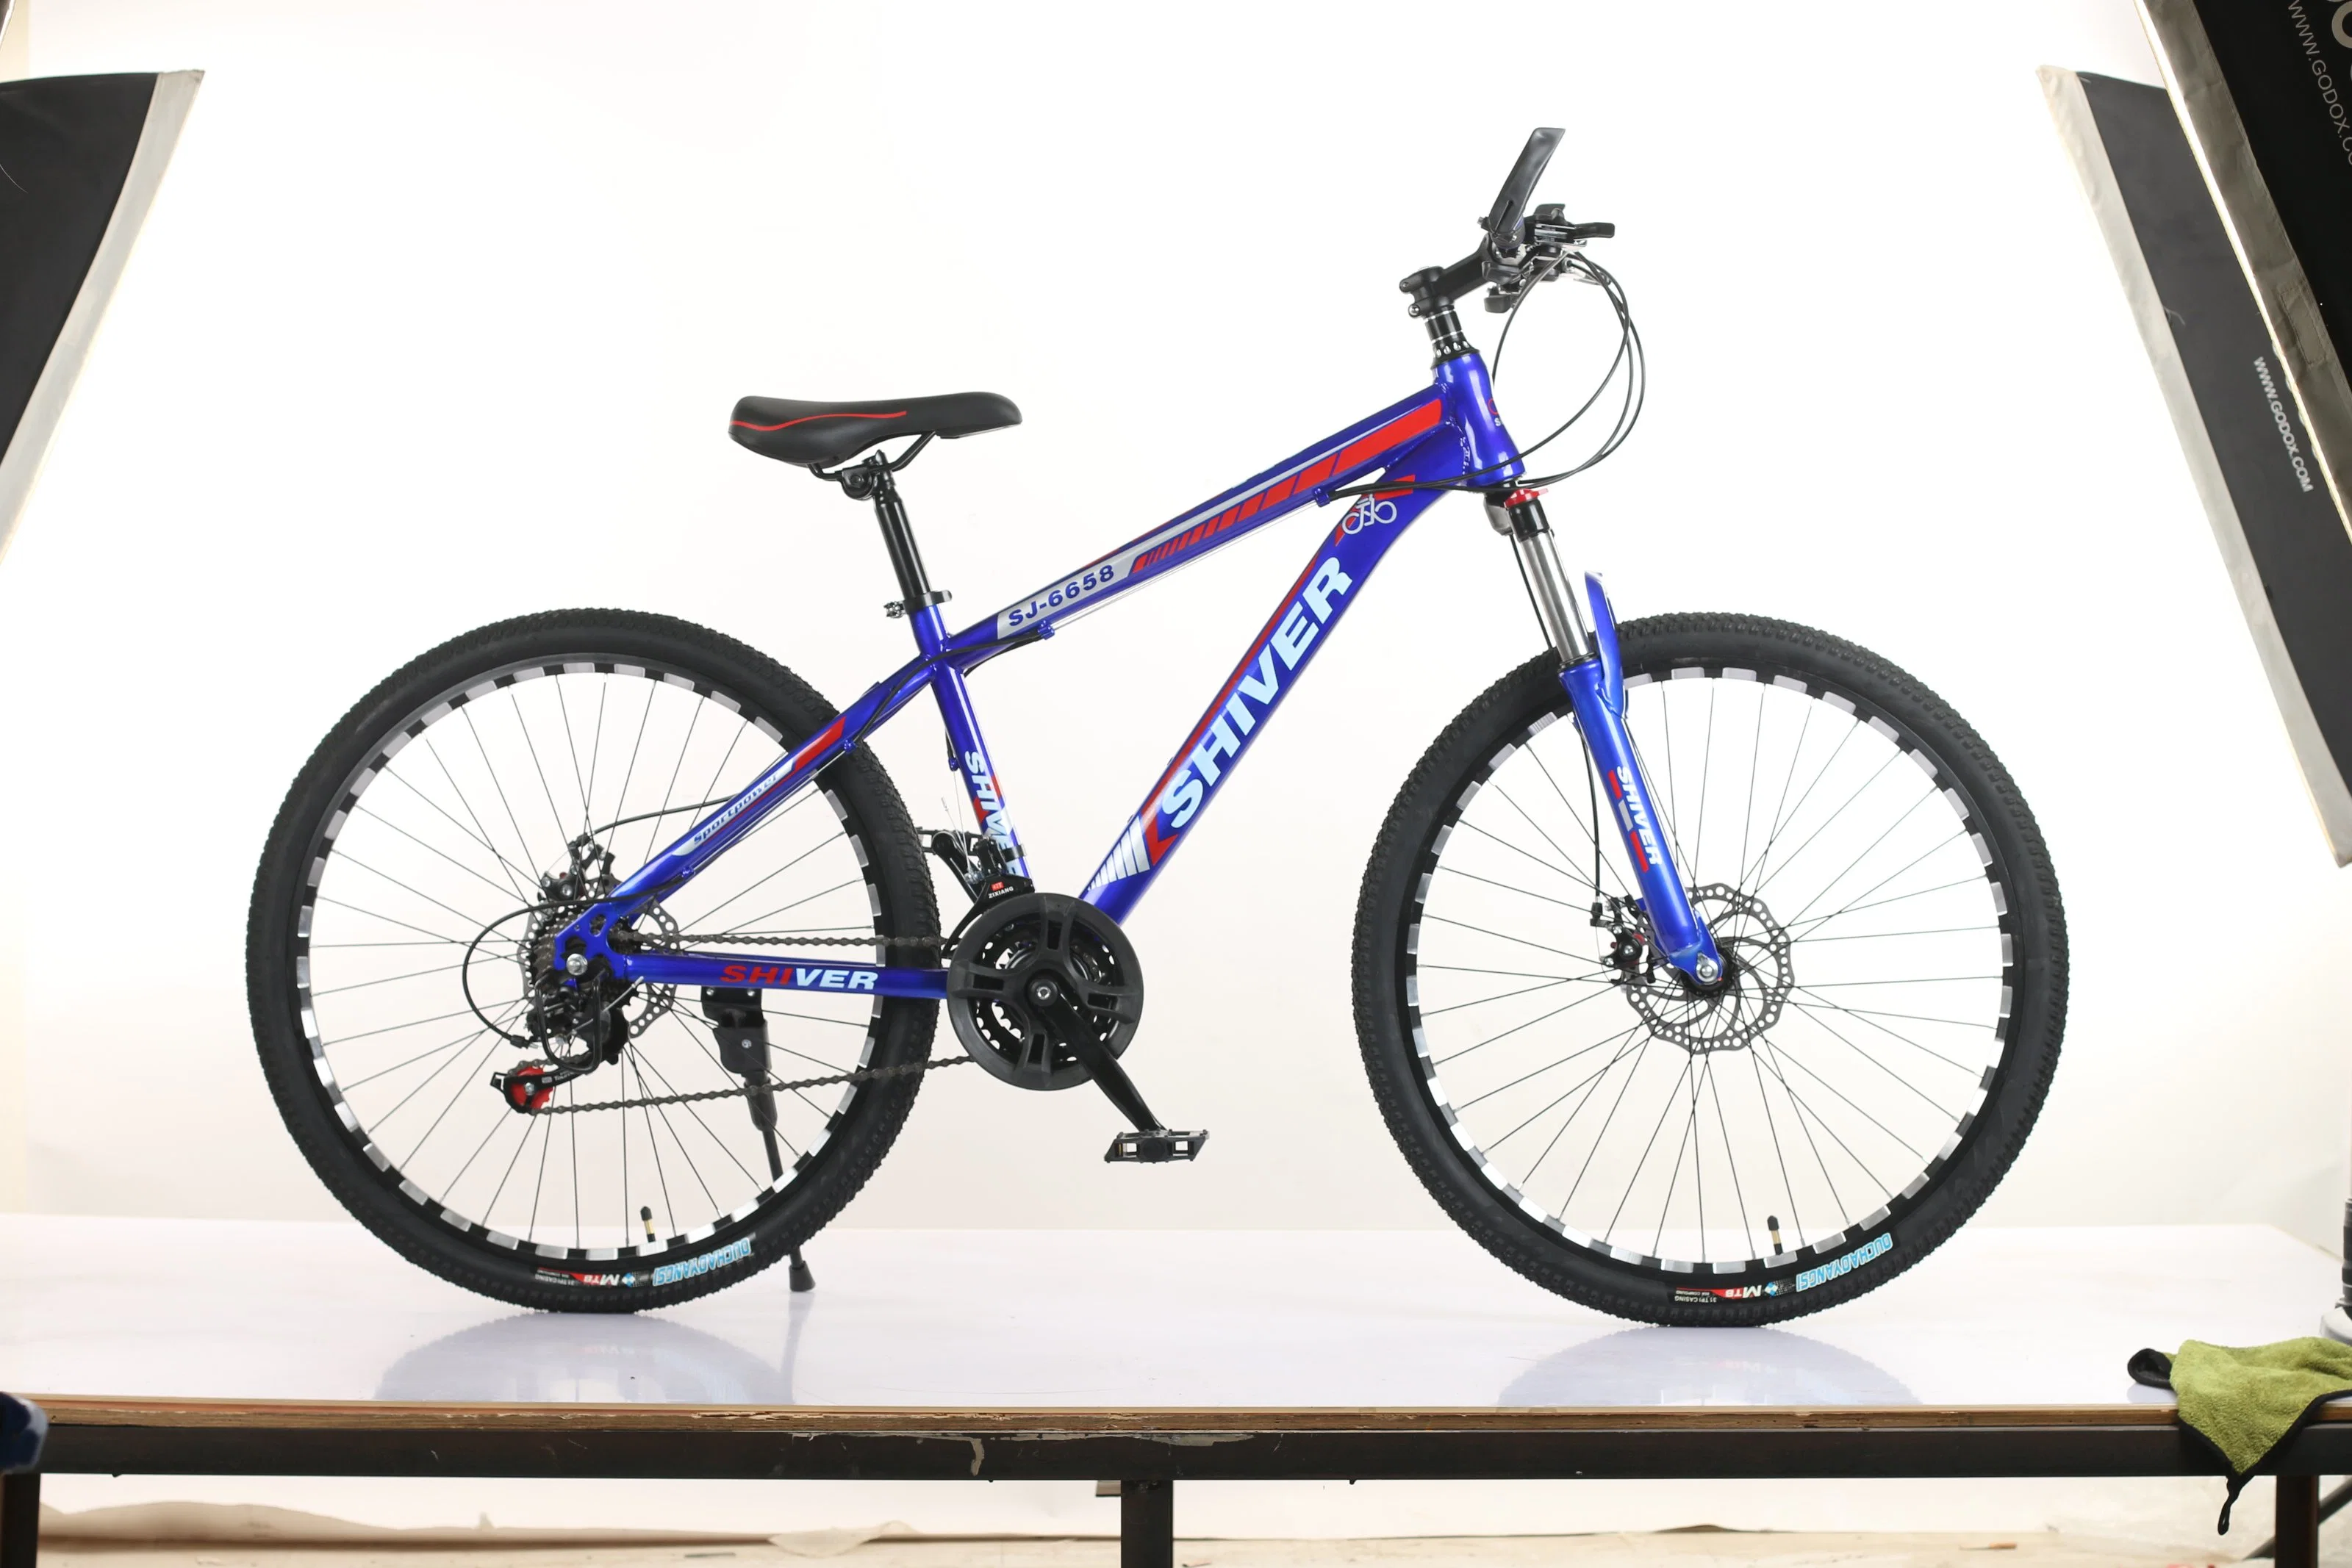 24 26 27.5 29 pulgadas de alta calidad baratos Mountain Bike bicicletas plegables en las fábricas chinas directamente de fábrica ofrece a bajo precio